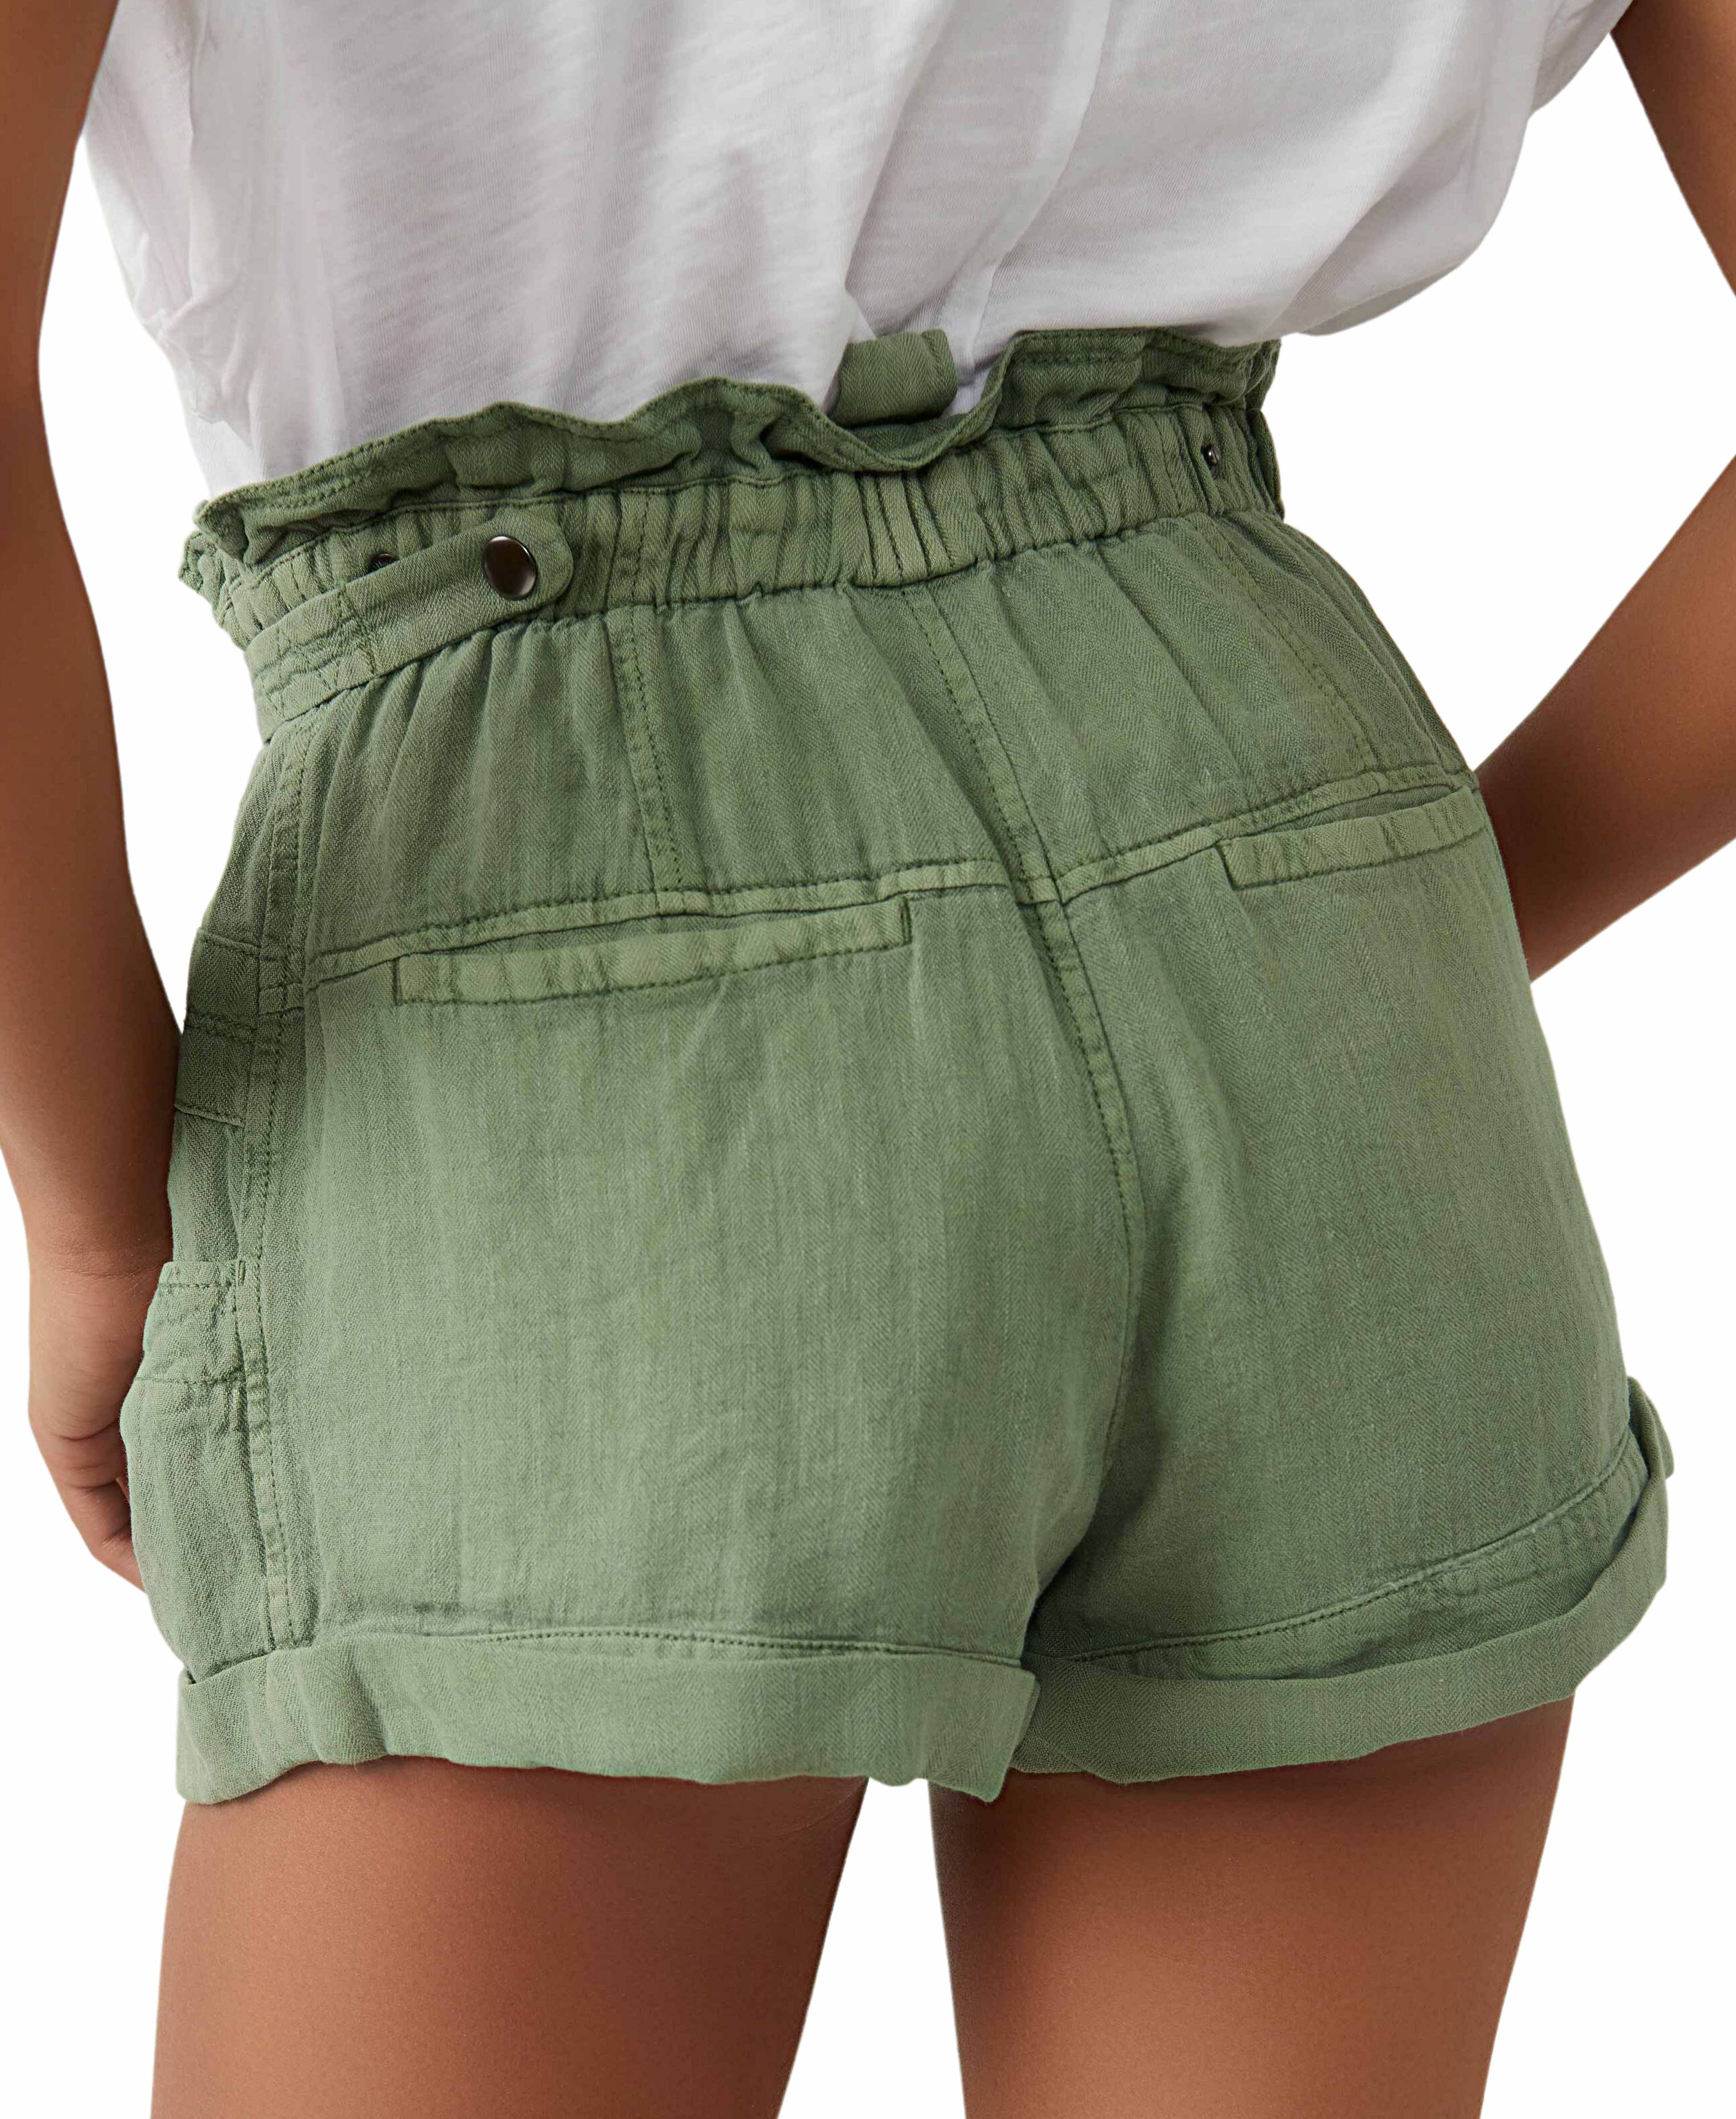 Topanga Cuff Shorts